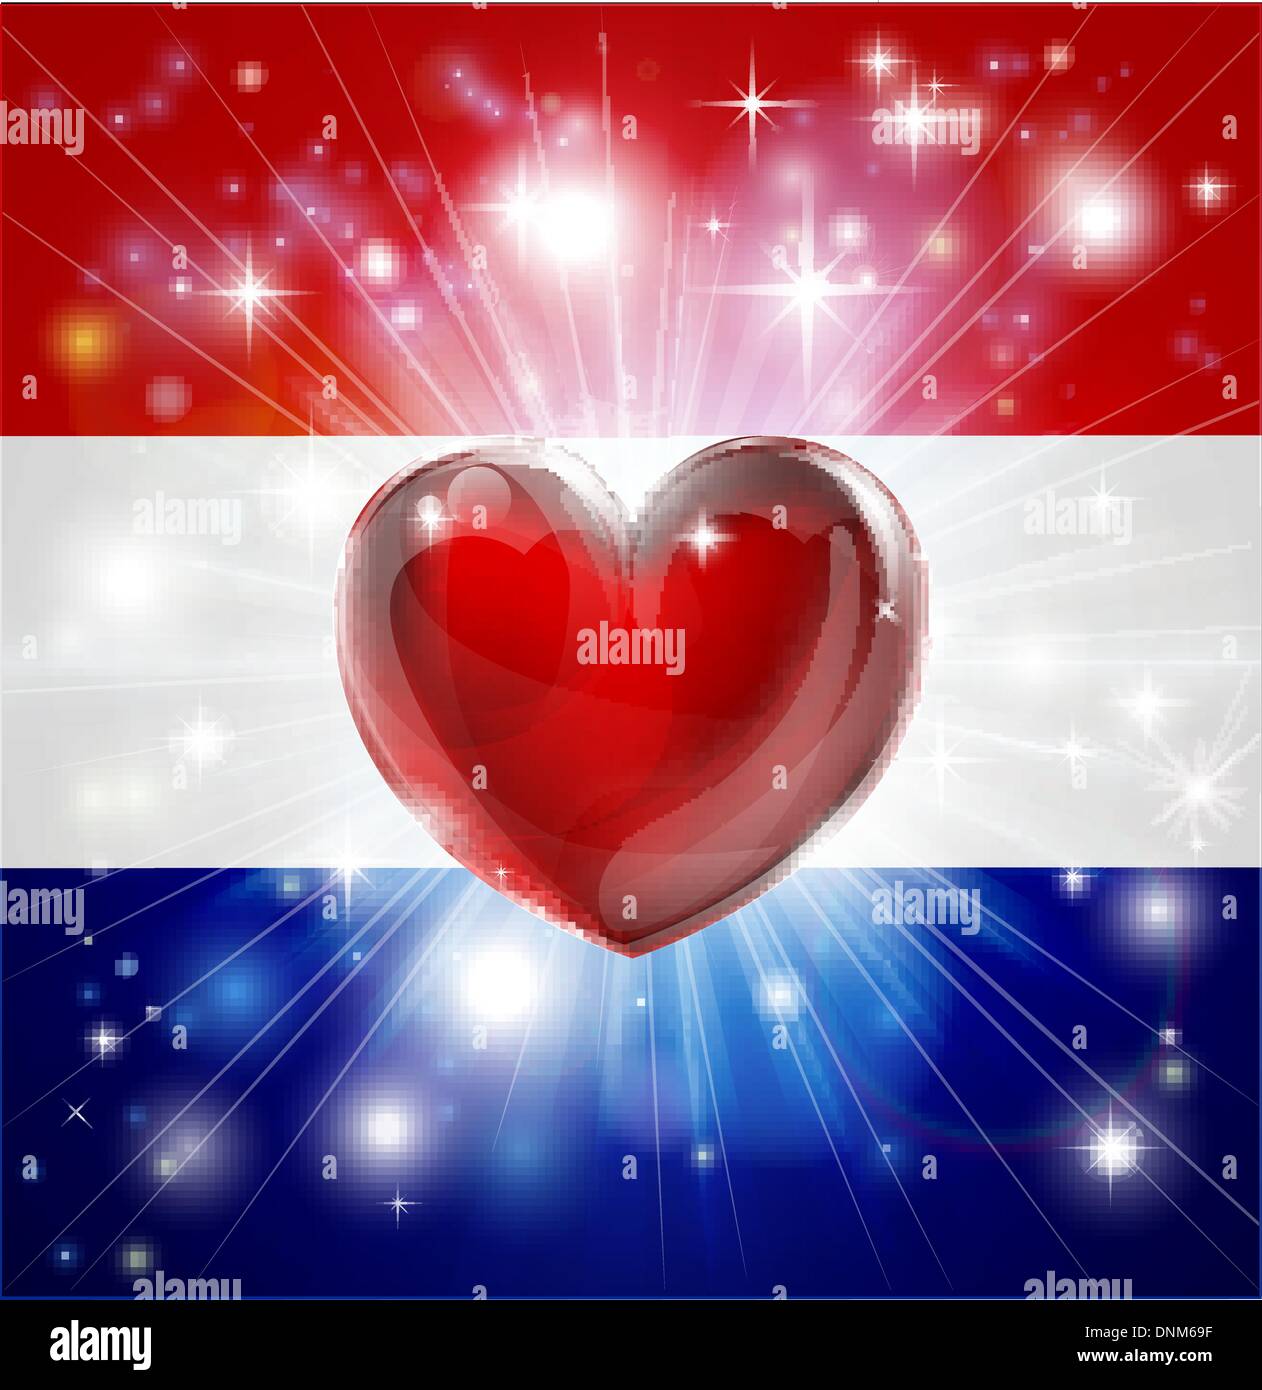 Drapeau de Pays-bas contexte patriotique avec pyrotechniques ou light burst et coeur d'amour dans le centre Illustration de Vecteur